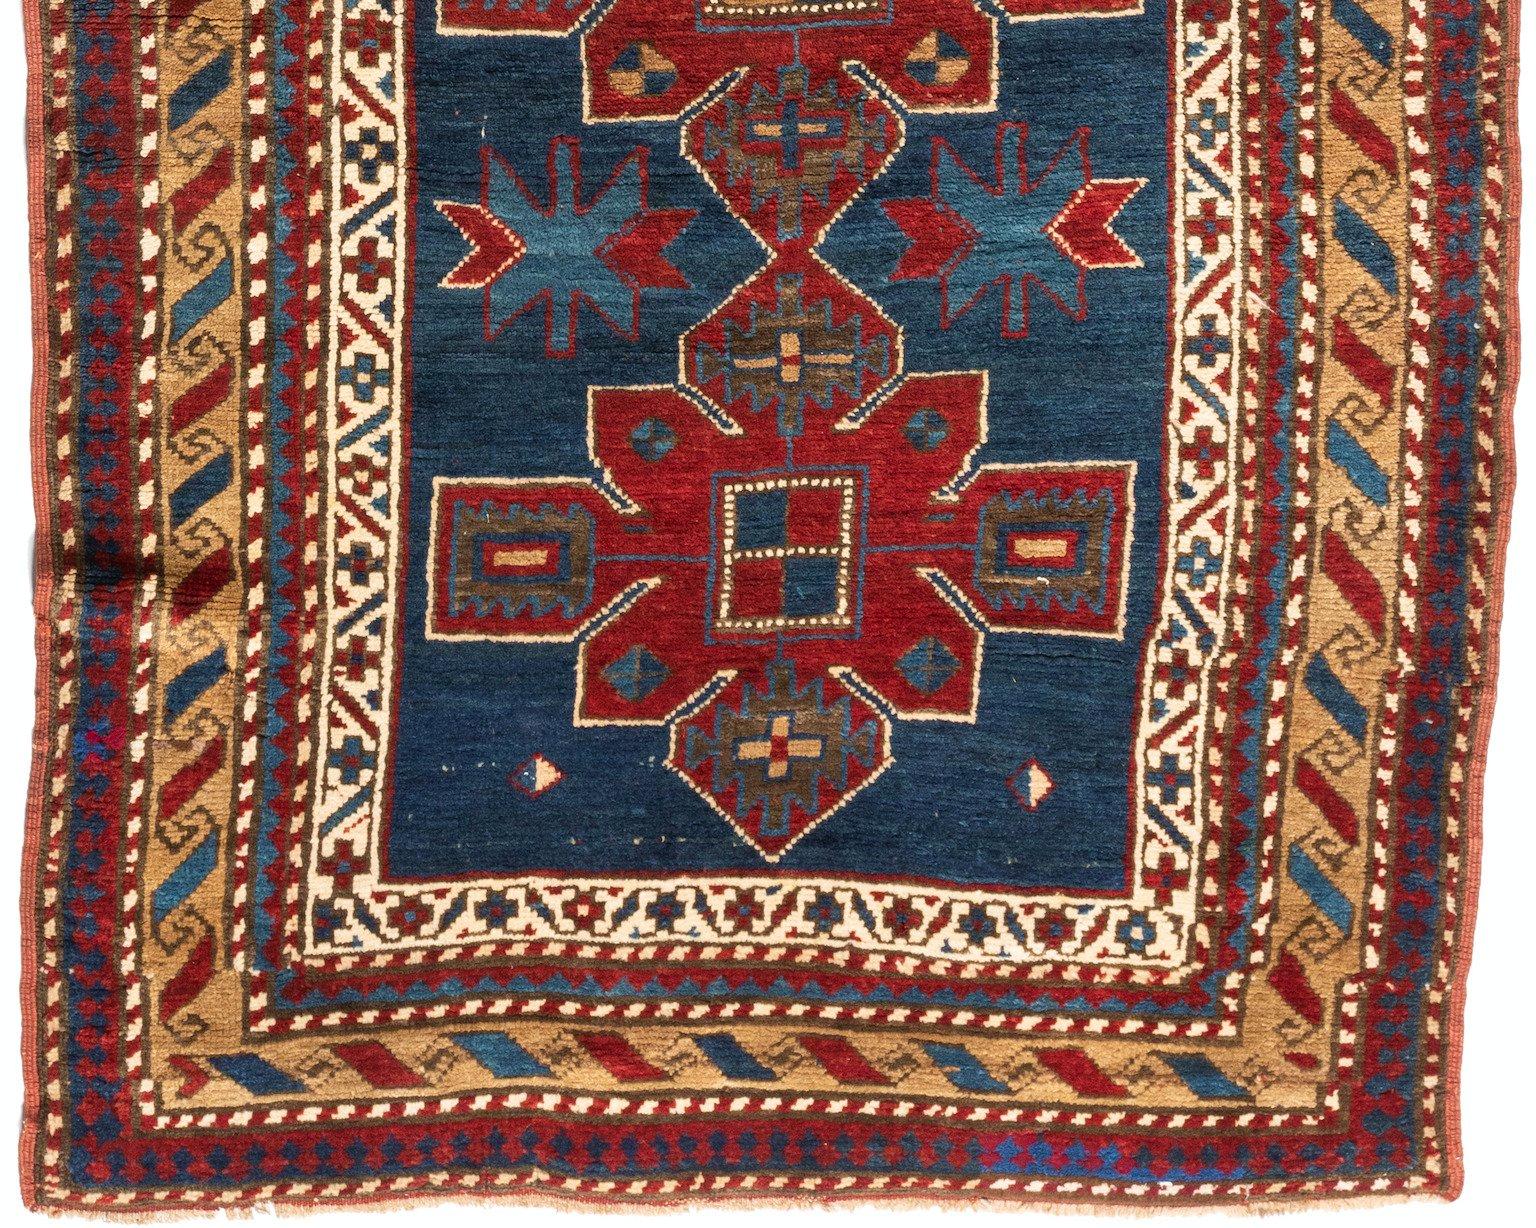 Kazakh Tapis antique bleu marine rouge or tribal géométrique caucasien Kazak circa 1930s en vente